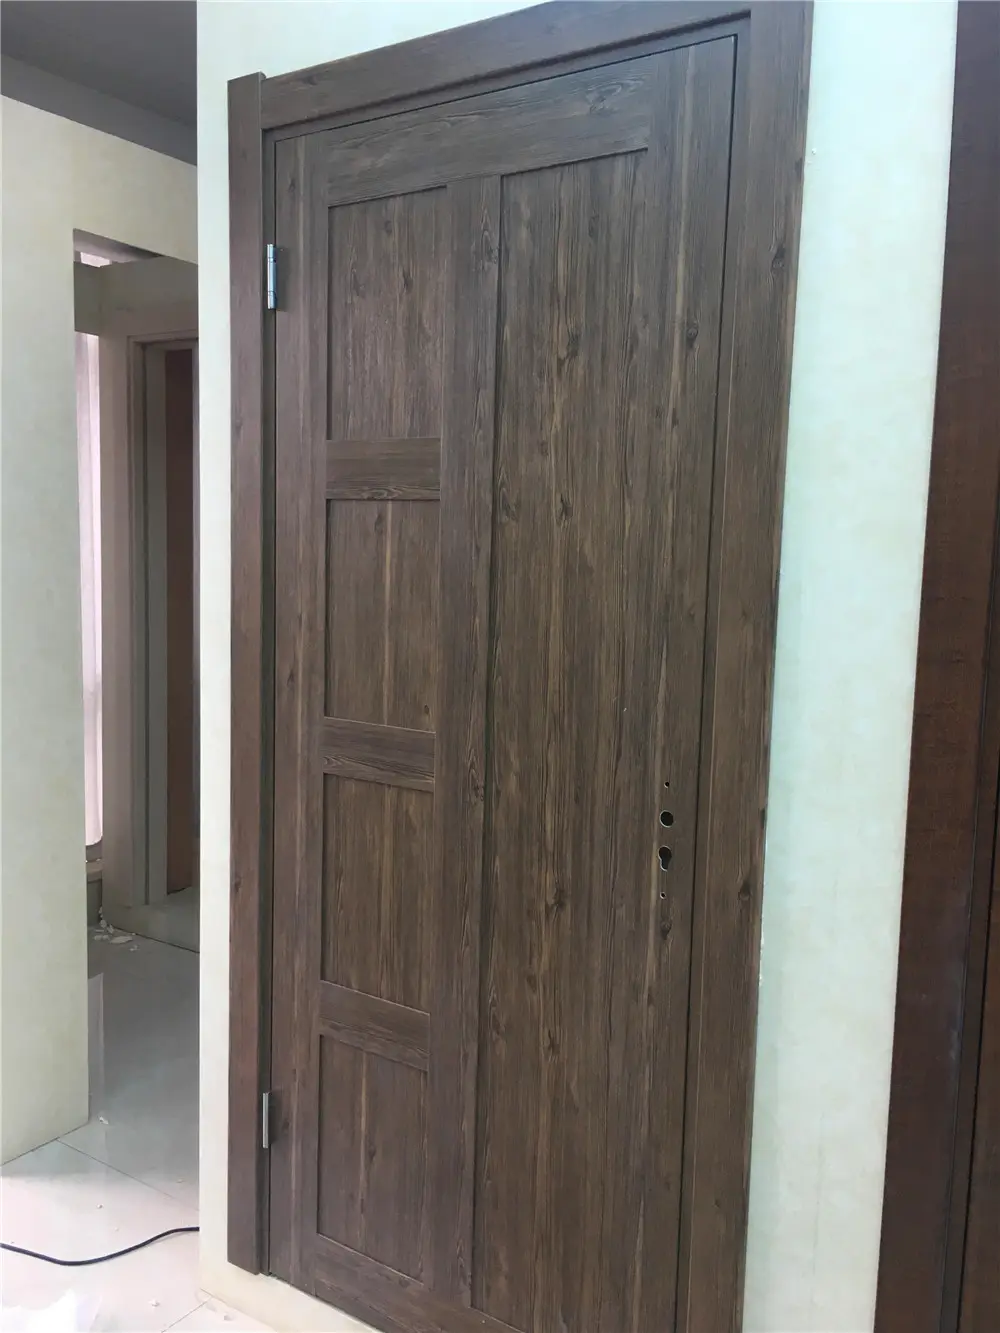 waterproof wpc material interior door  pvc coated surface door design UAE  Dubai  Oman wpc door